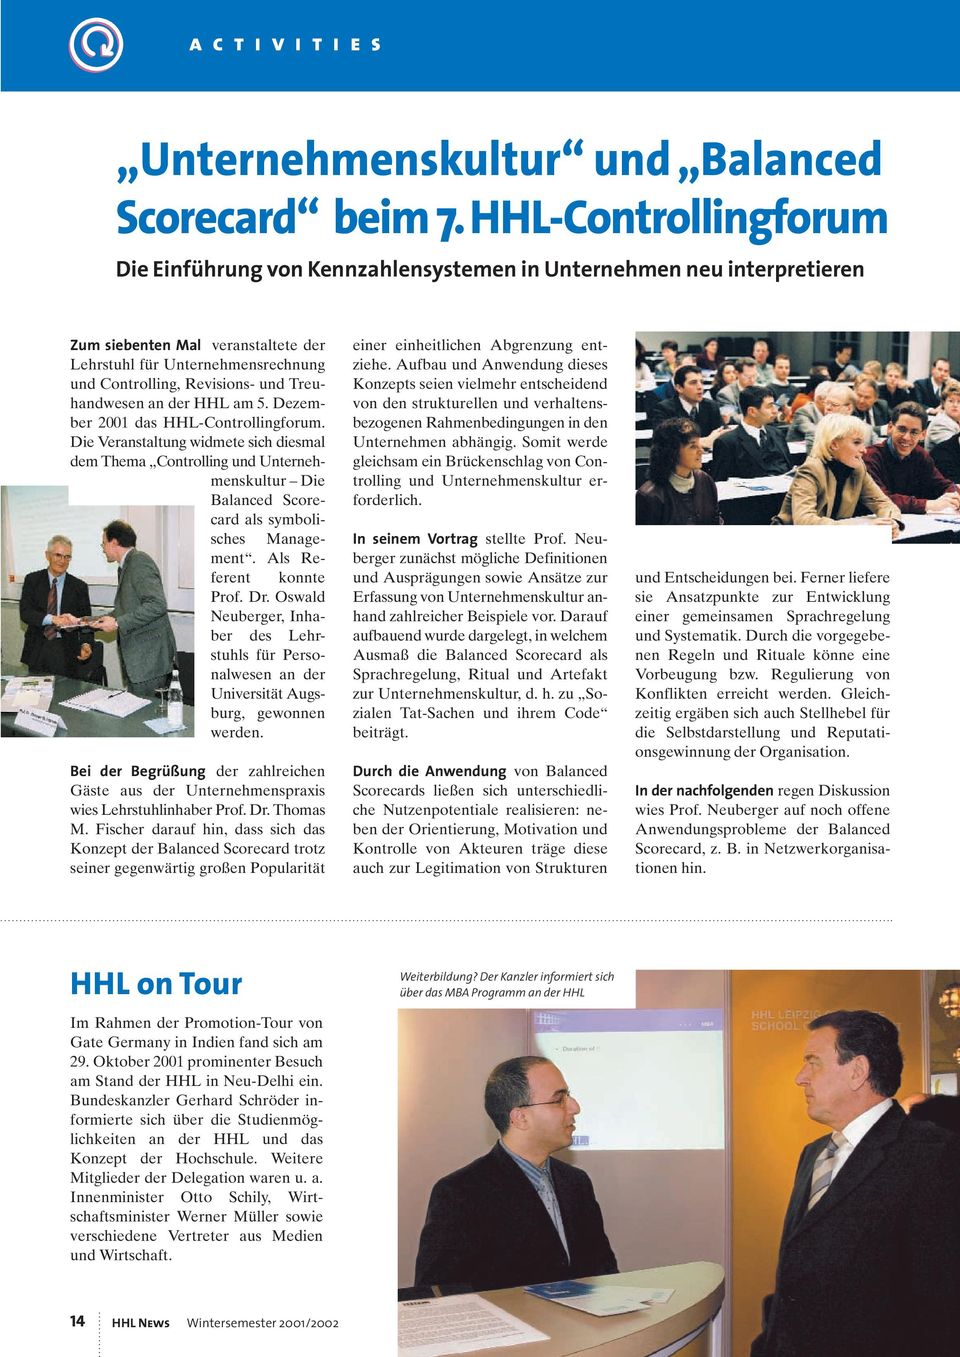 Treuhandwesen an der HHL am 5. Dezember 2001 das HHL-Controllingforum.